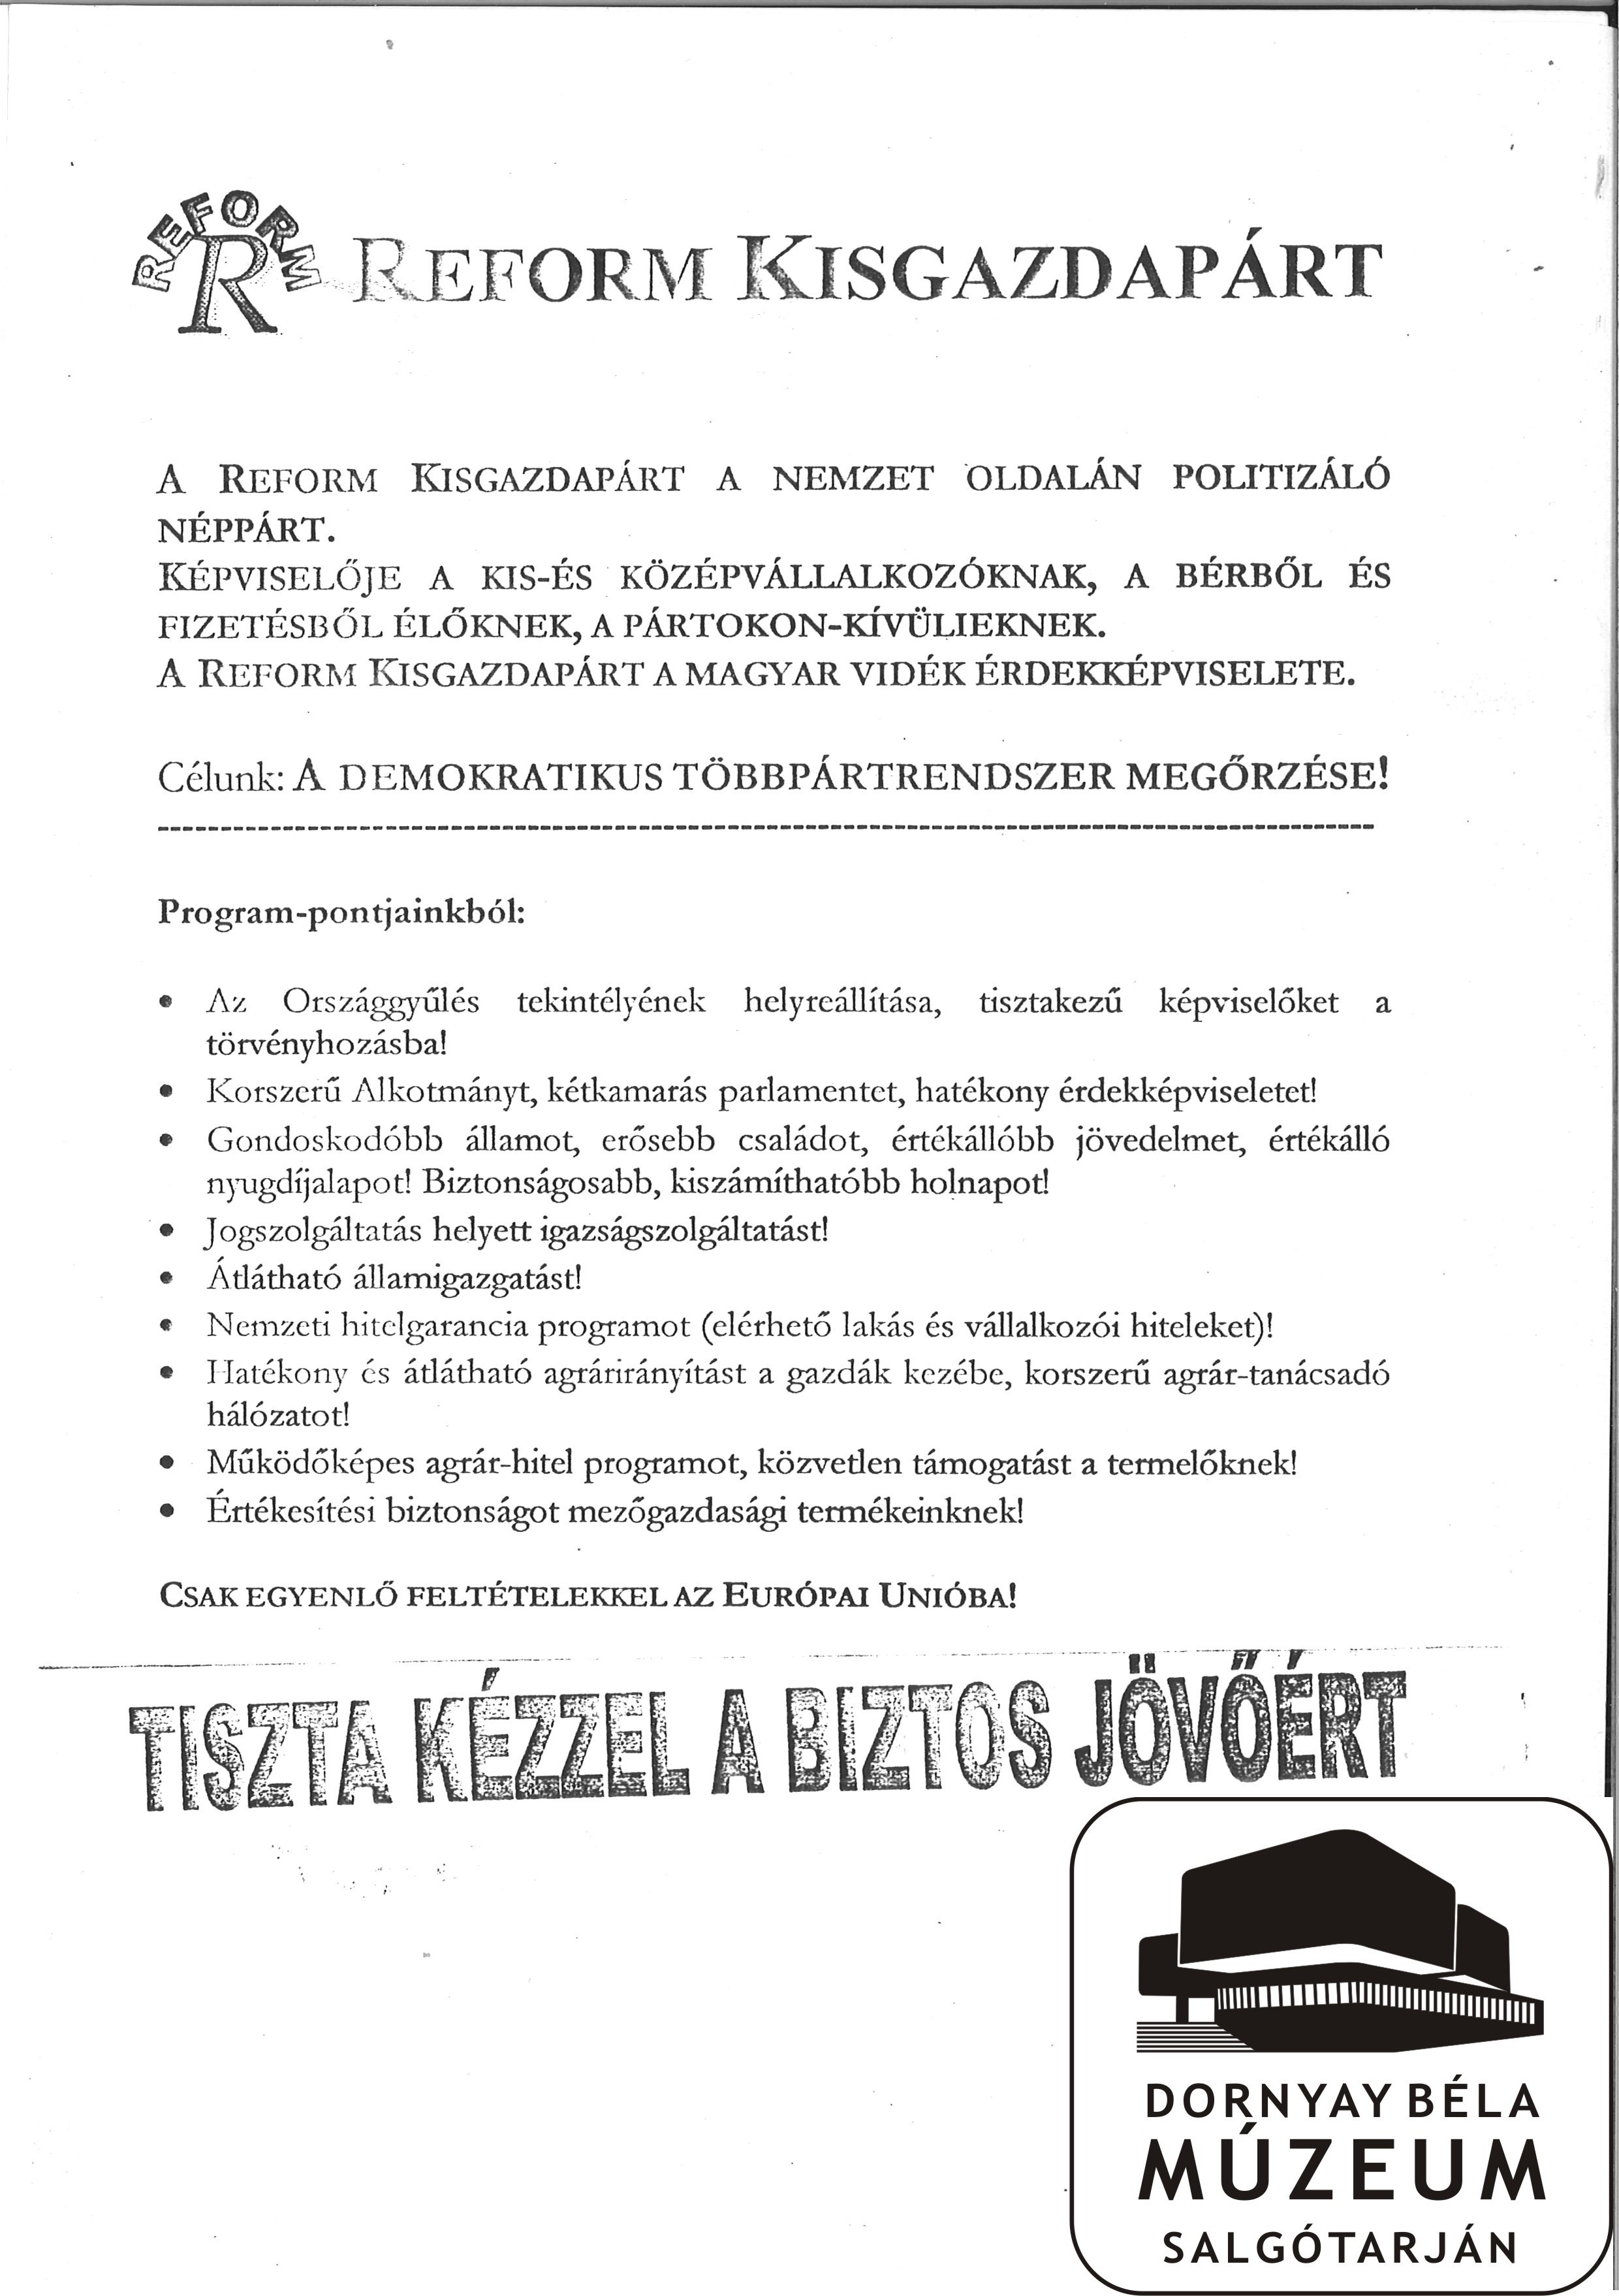 Reform Kisgazda Párt programpontjai (Dornyay Béla Múzeum, Salgótarján CC BY-NC-SA)